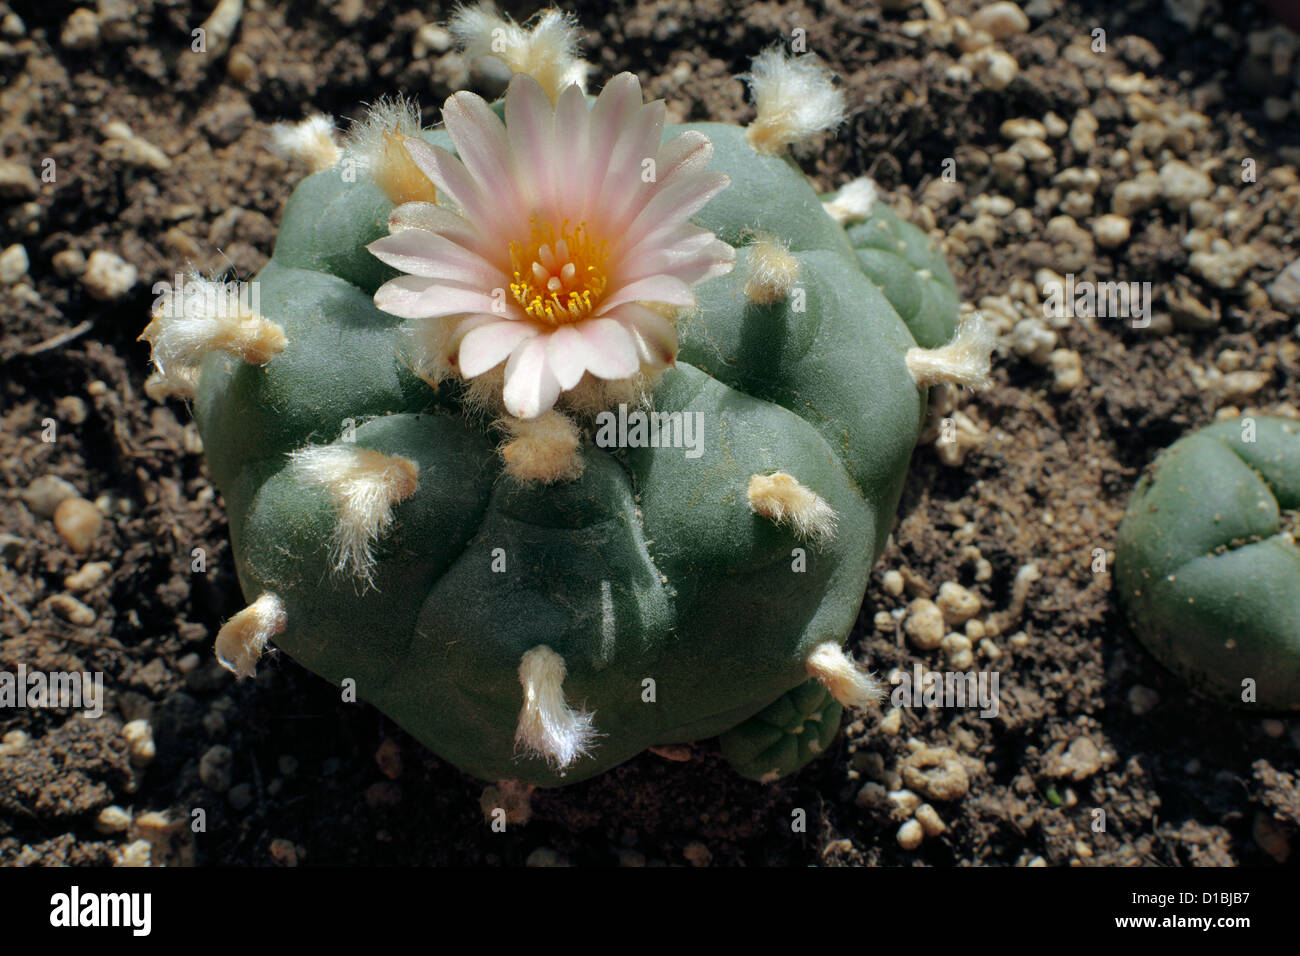 Un peyote cactus in fiore. (Minore peyote cactus sulla destra). Peyote cactus sono una fonte di allucinogeni mescaline. Foto Stock